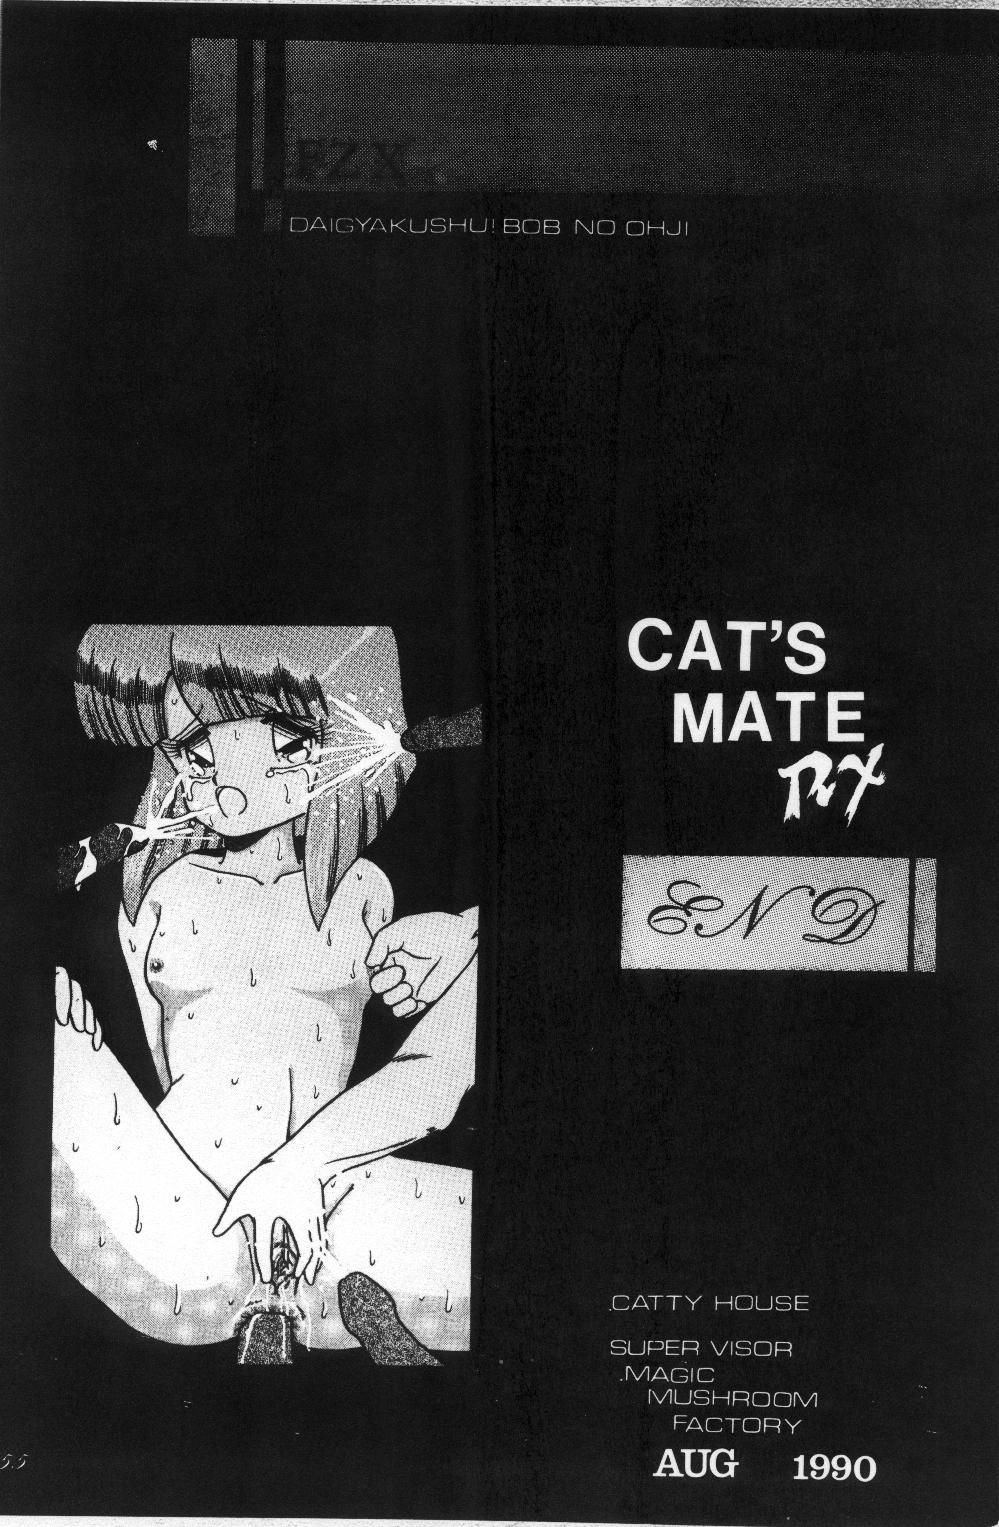 Cat's Mate RX 55